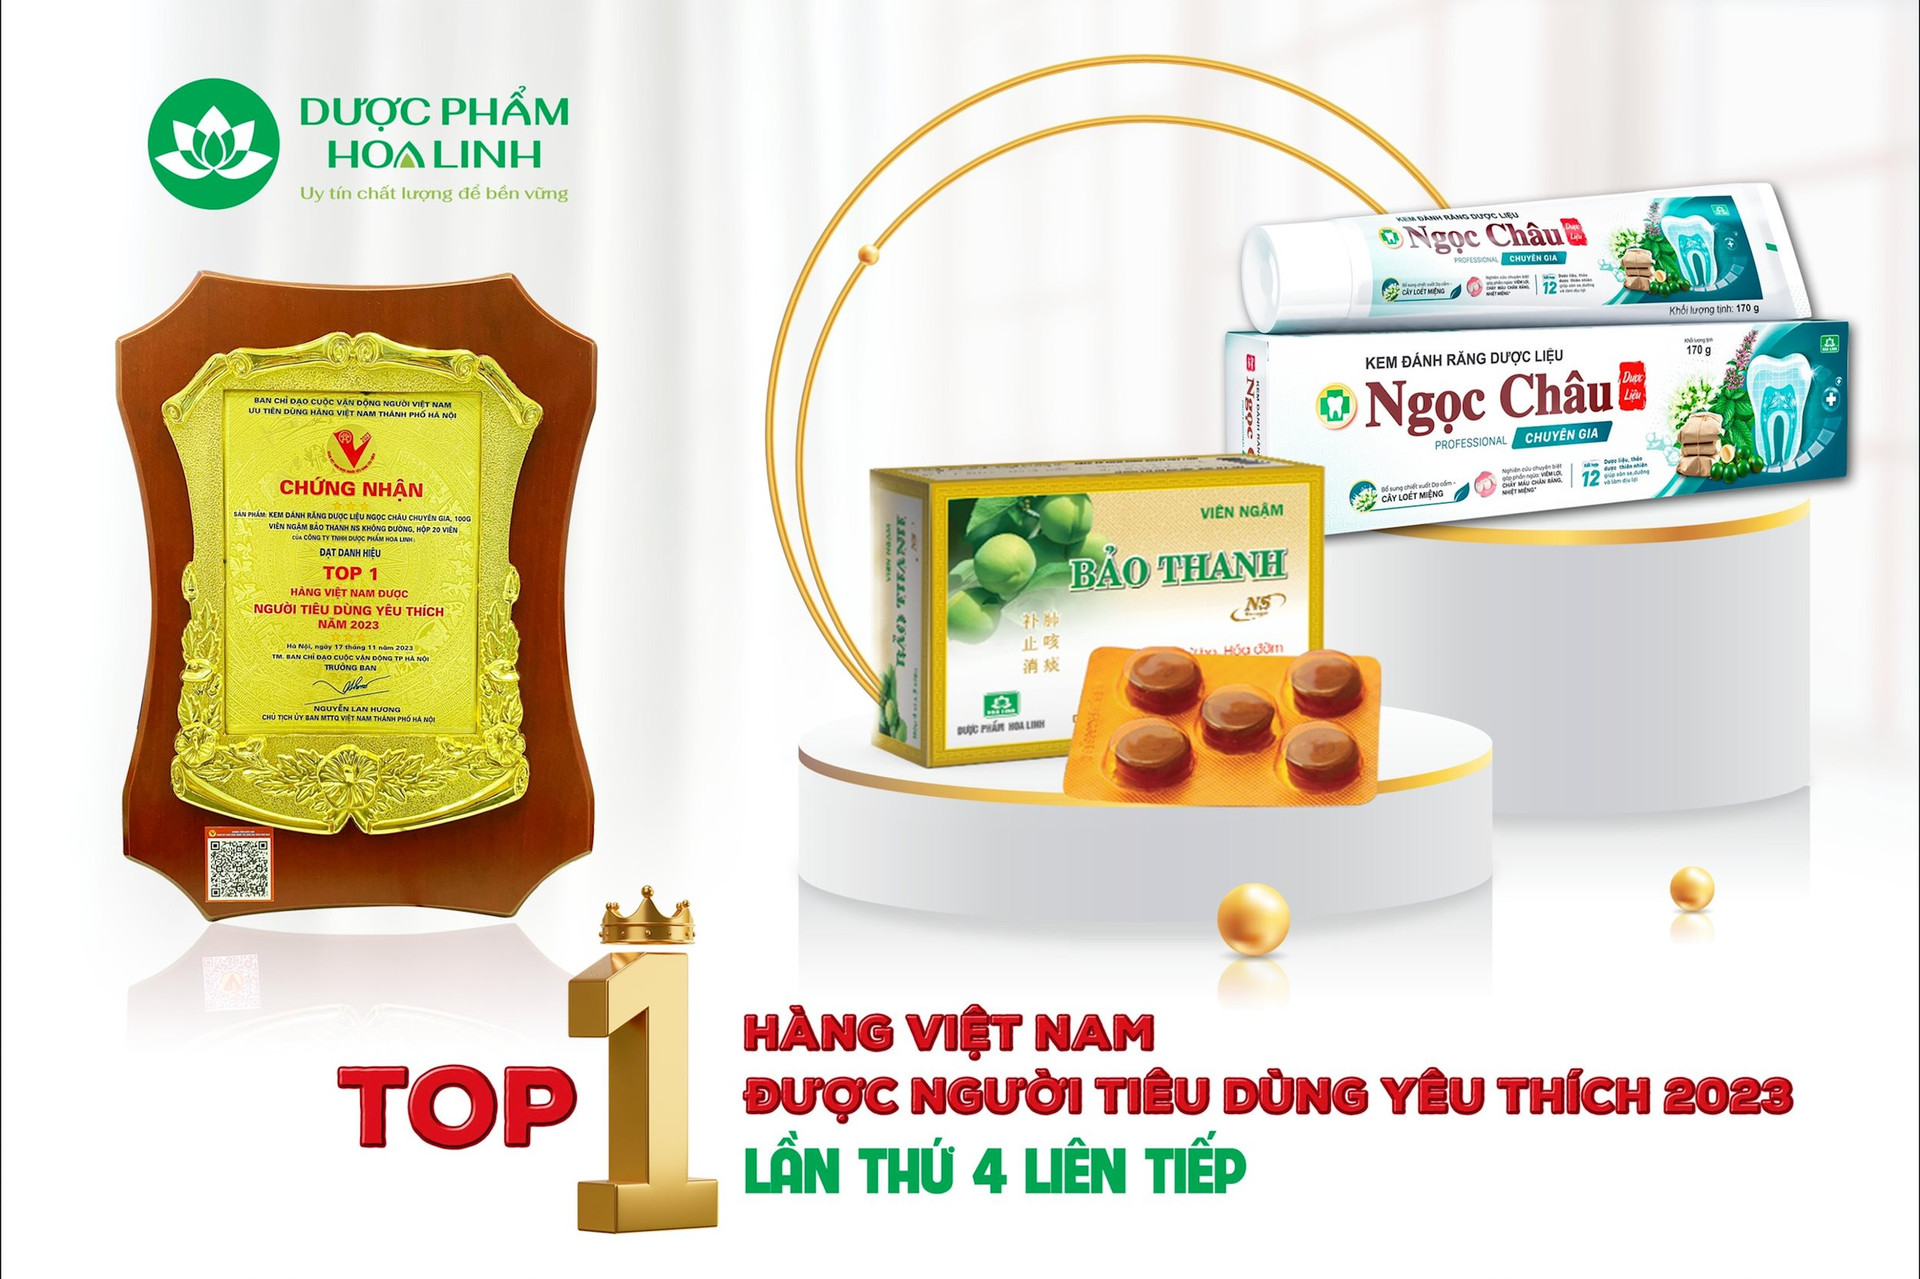 Viên ngậm Bảo Thanh NS không đường và Kem đánh răng dược liệu Ngọc Châu là những sản phẩm nổi tiếng của Dược phẩm Hoa Linh.